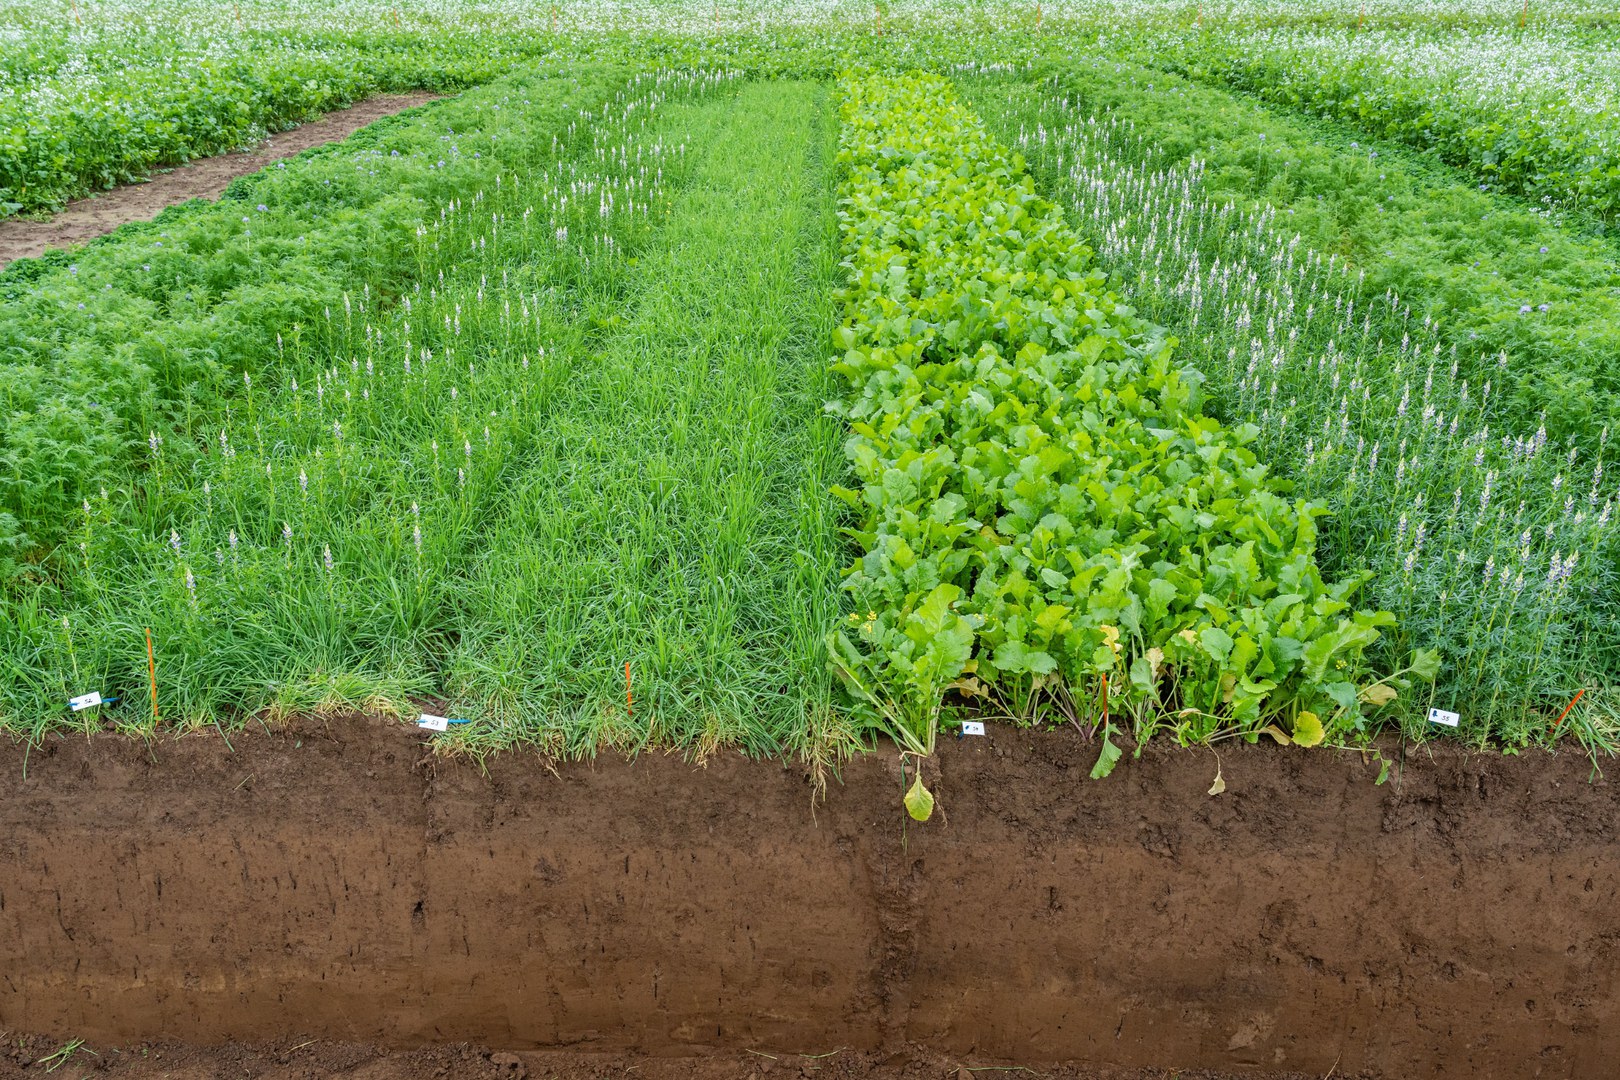 Soil profile of a test field: